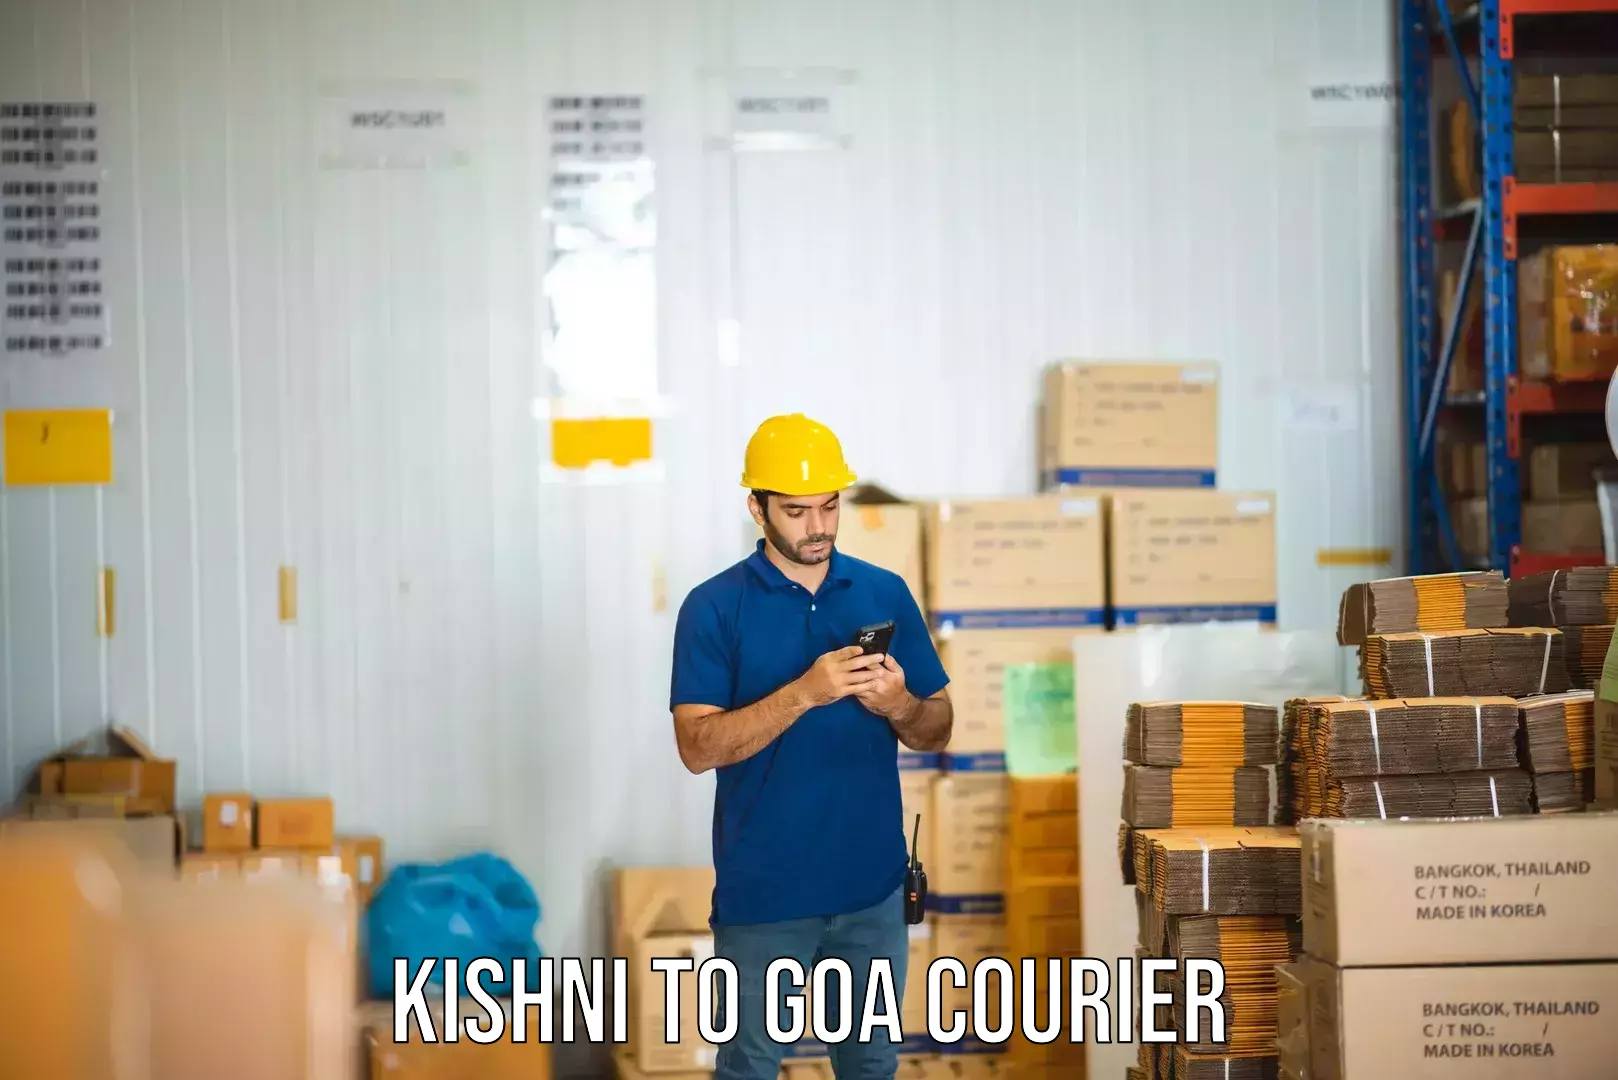 User-friendly delivery service Kishni to Ponda